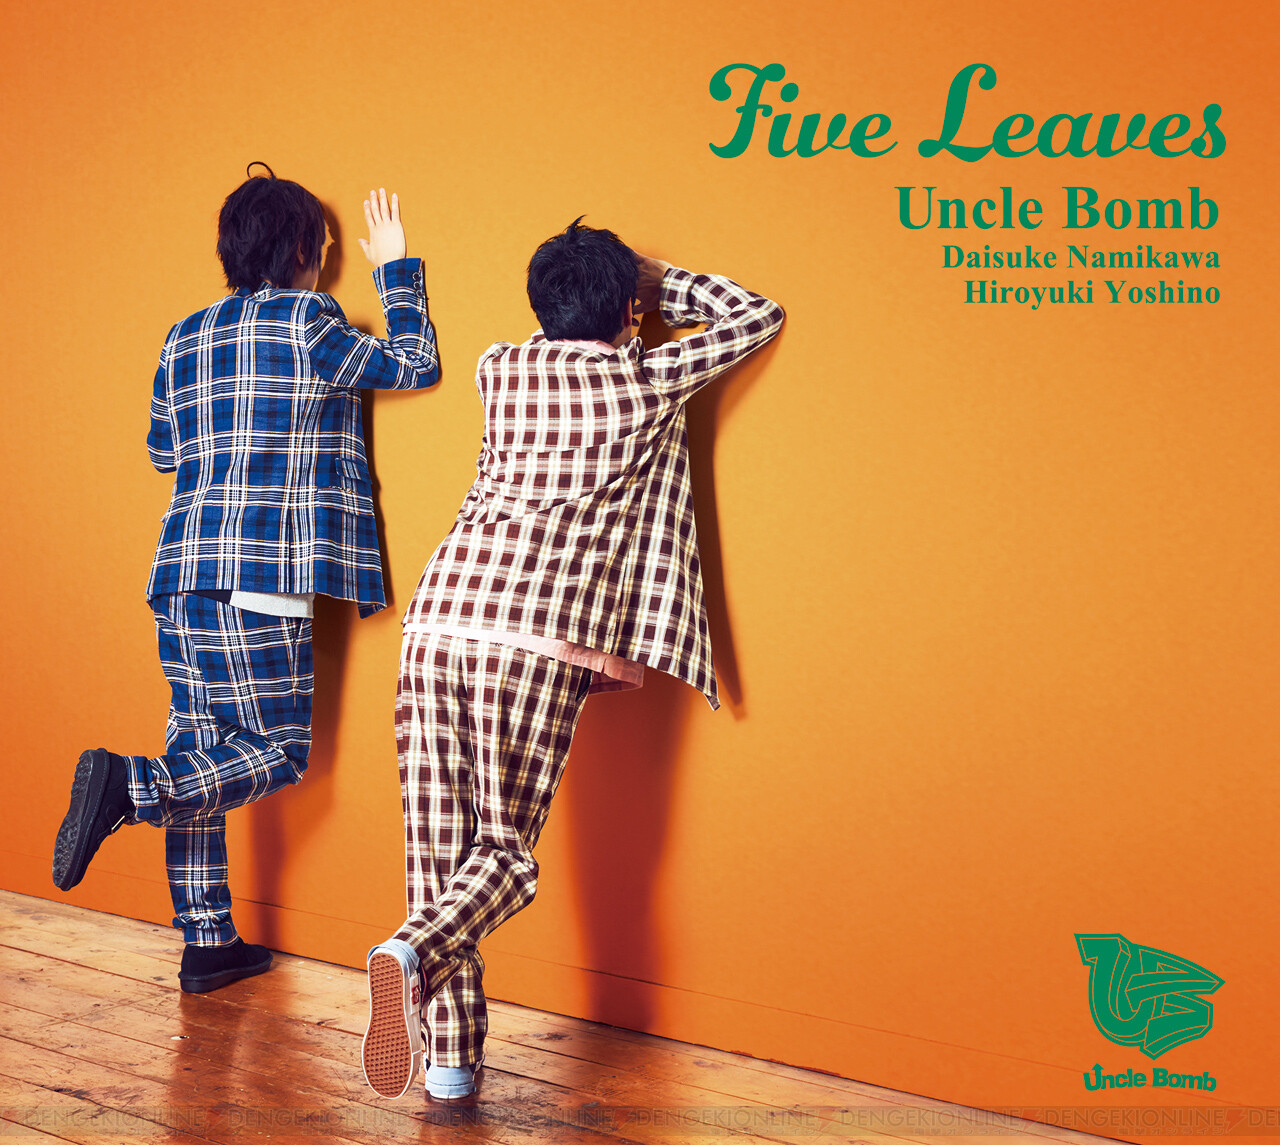 画像2 3 Uncle Bombの5thミニアルバム Five Leaves が1月8日に発売 浪川大輔さんと吉野裕行さんにインタビュー ガルスタオンライン